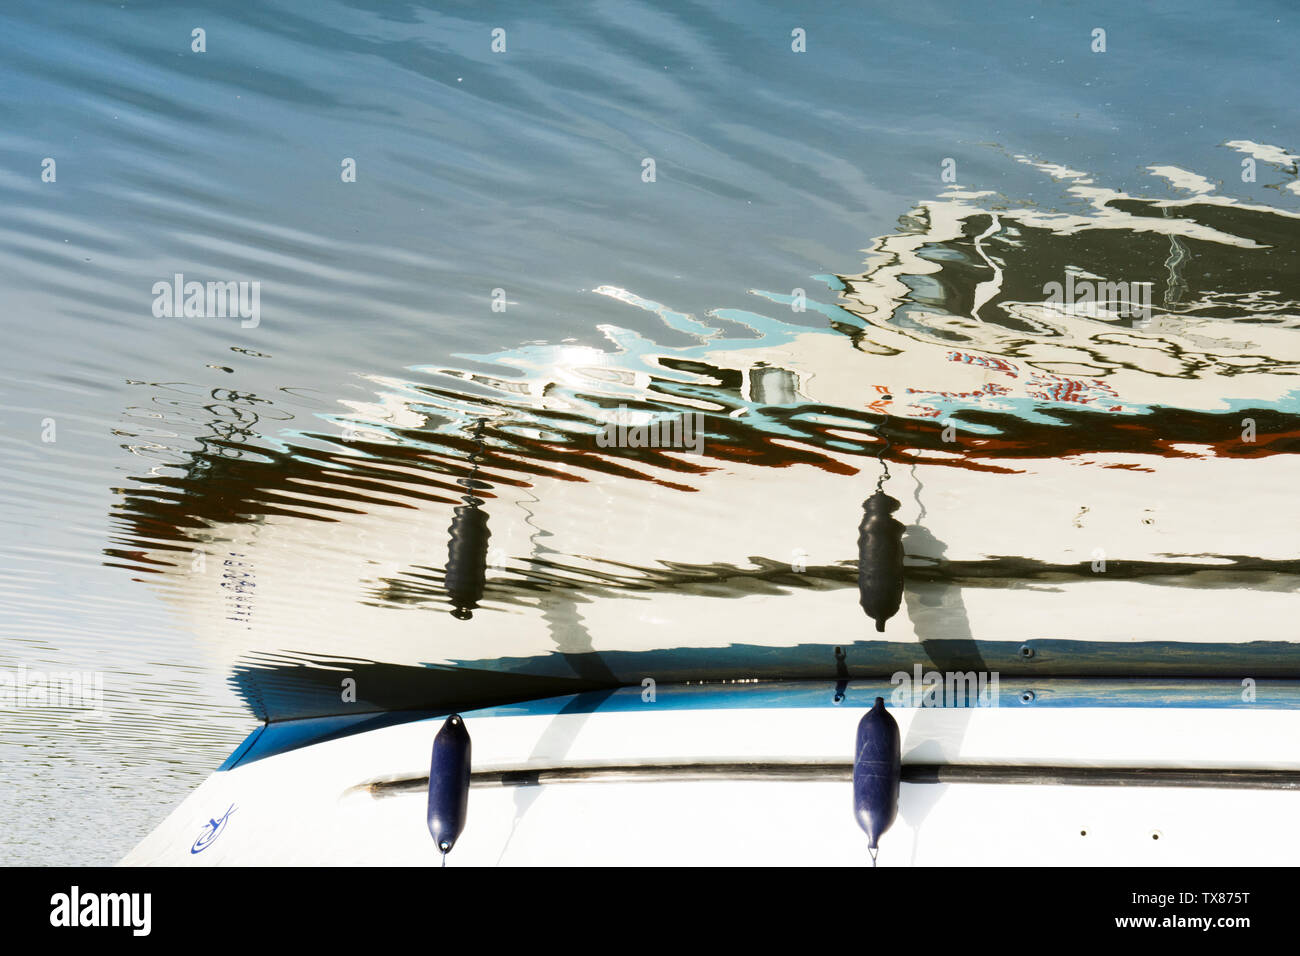 La réflexion sur les rides sur l'eau d'un bateau de croisière à moteur, bateau, maison de bateau, les Norfolk Broads, le Royaume-Uni, l'image miroir. Banque D'Images